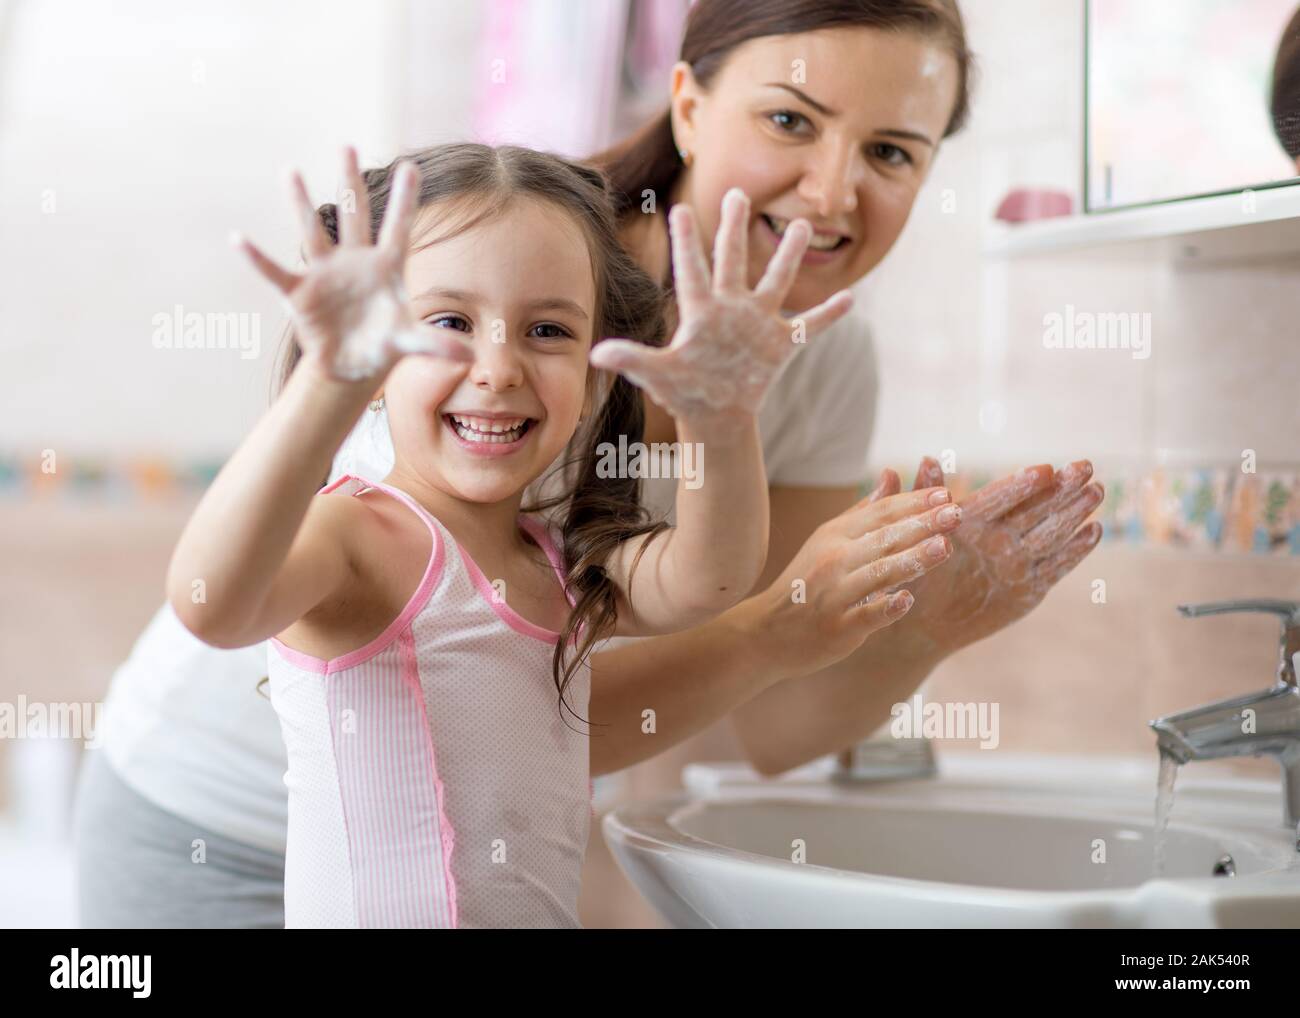 Alegre kid lavarse las manos con jabón y mostrando las palmas Foto de stock